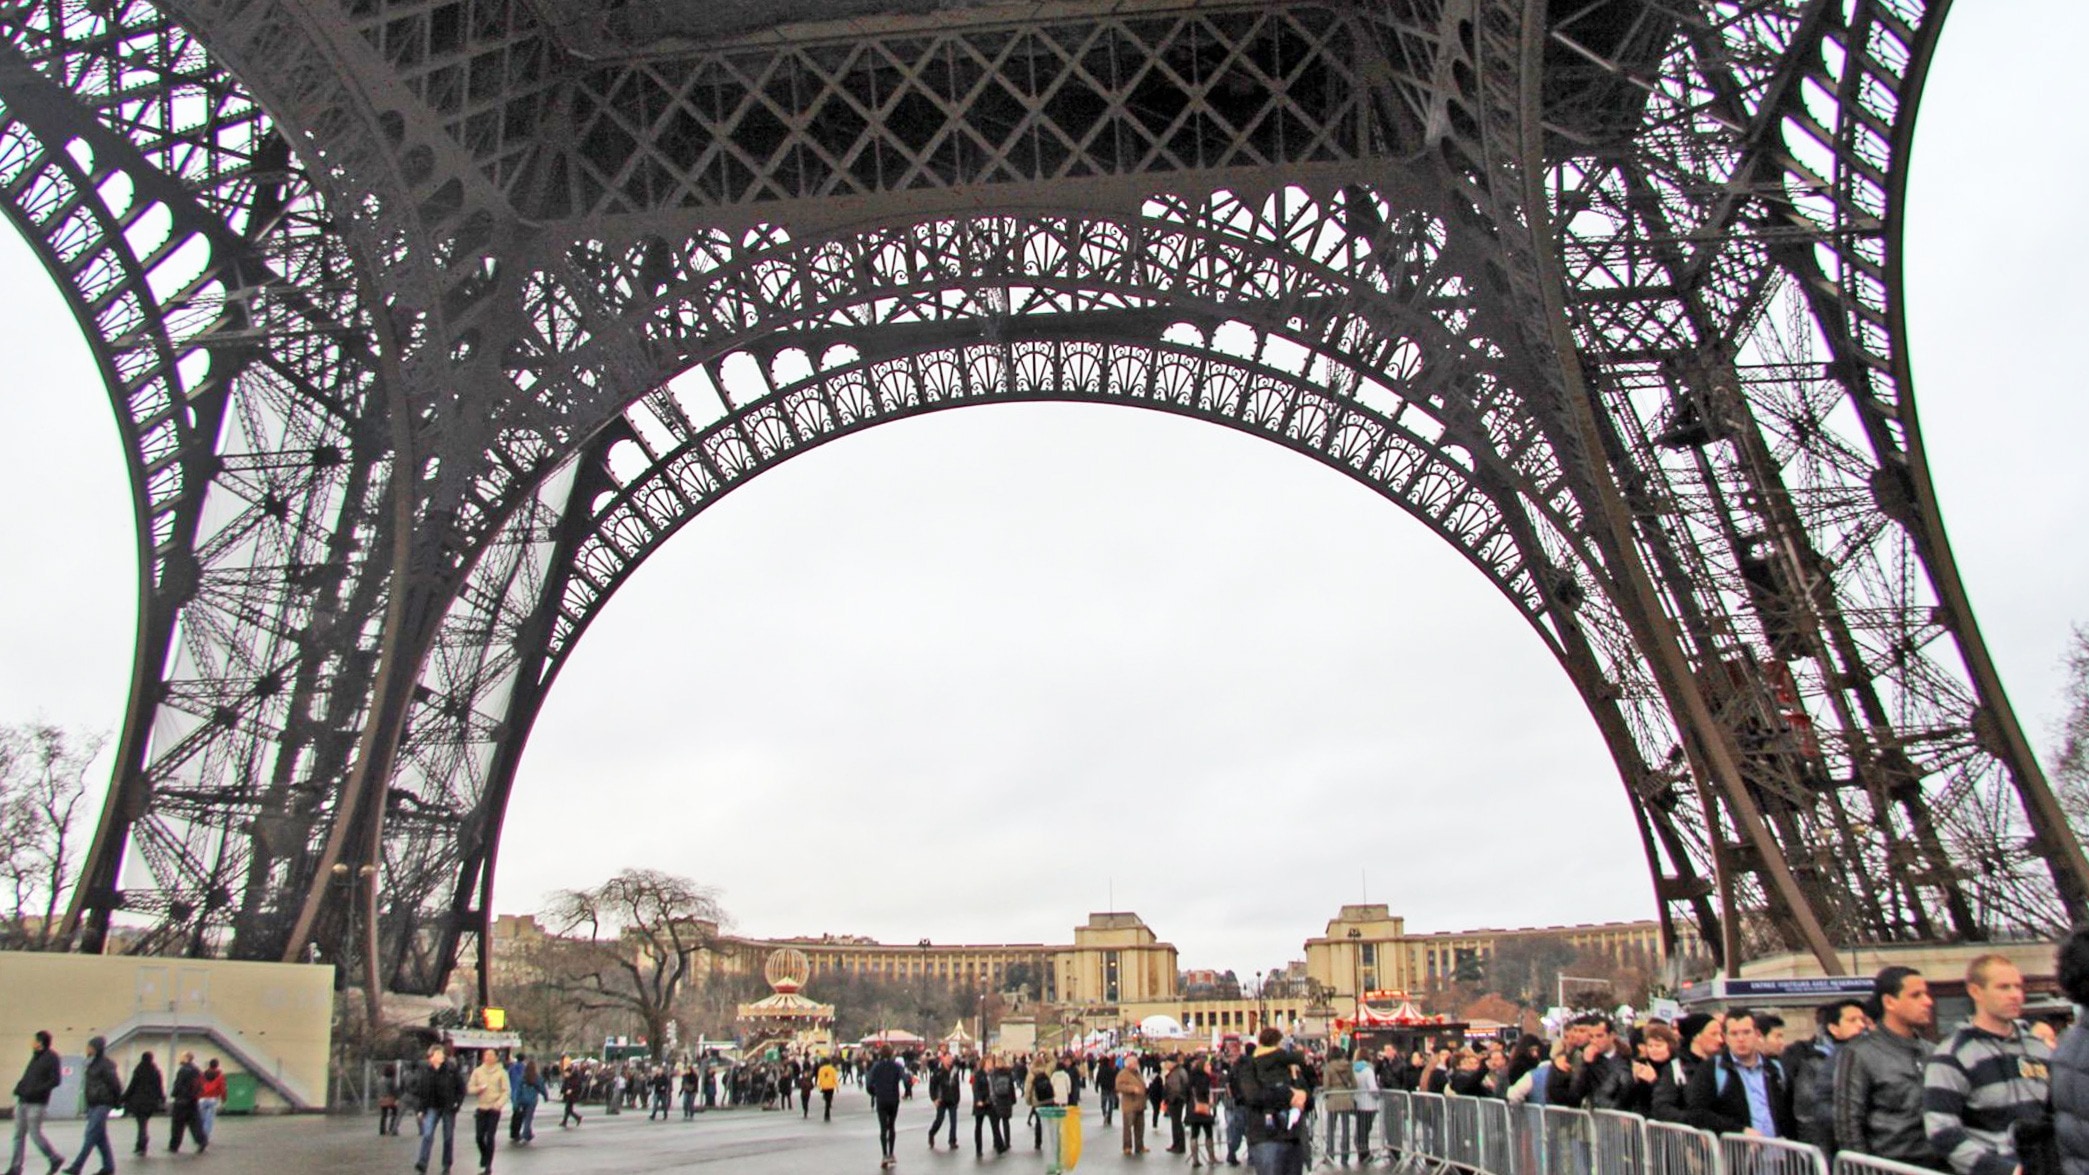 Eiffel Tower, France, Paris, architecture, arch